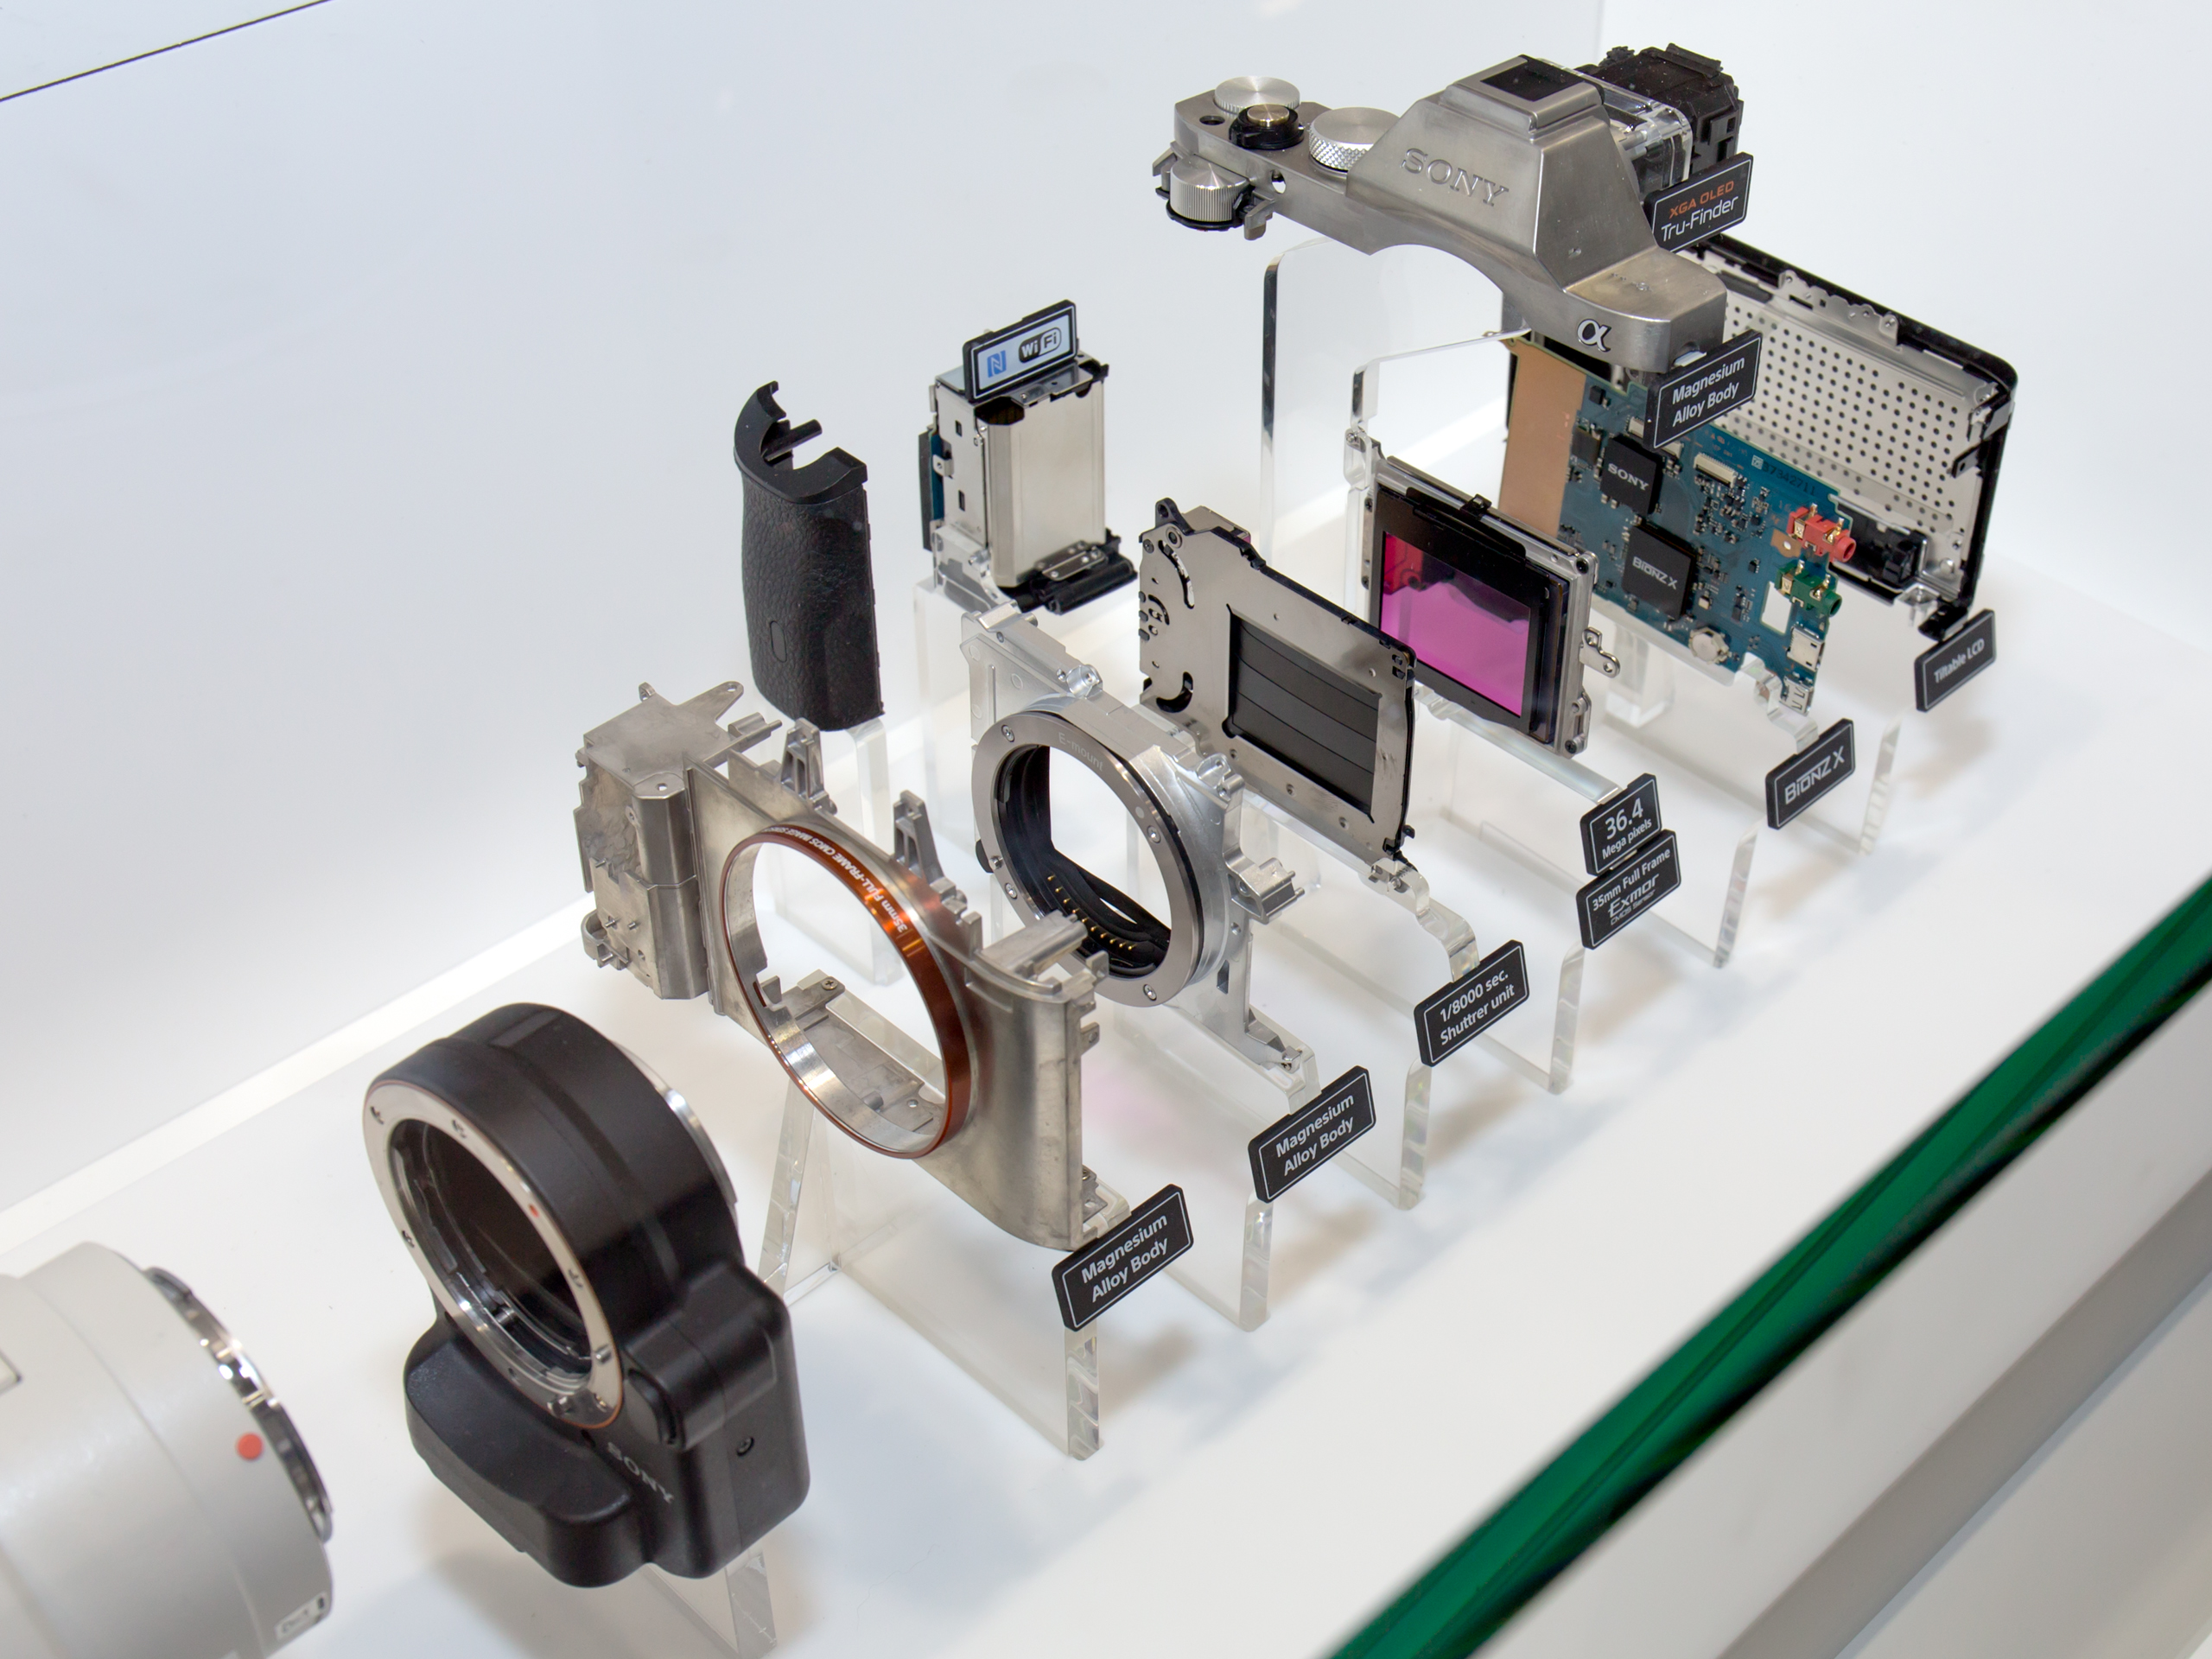 Sony Alpha ILCE-7R taken apart 2014 CP+